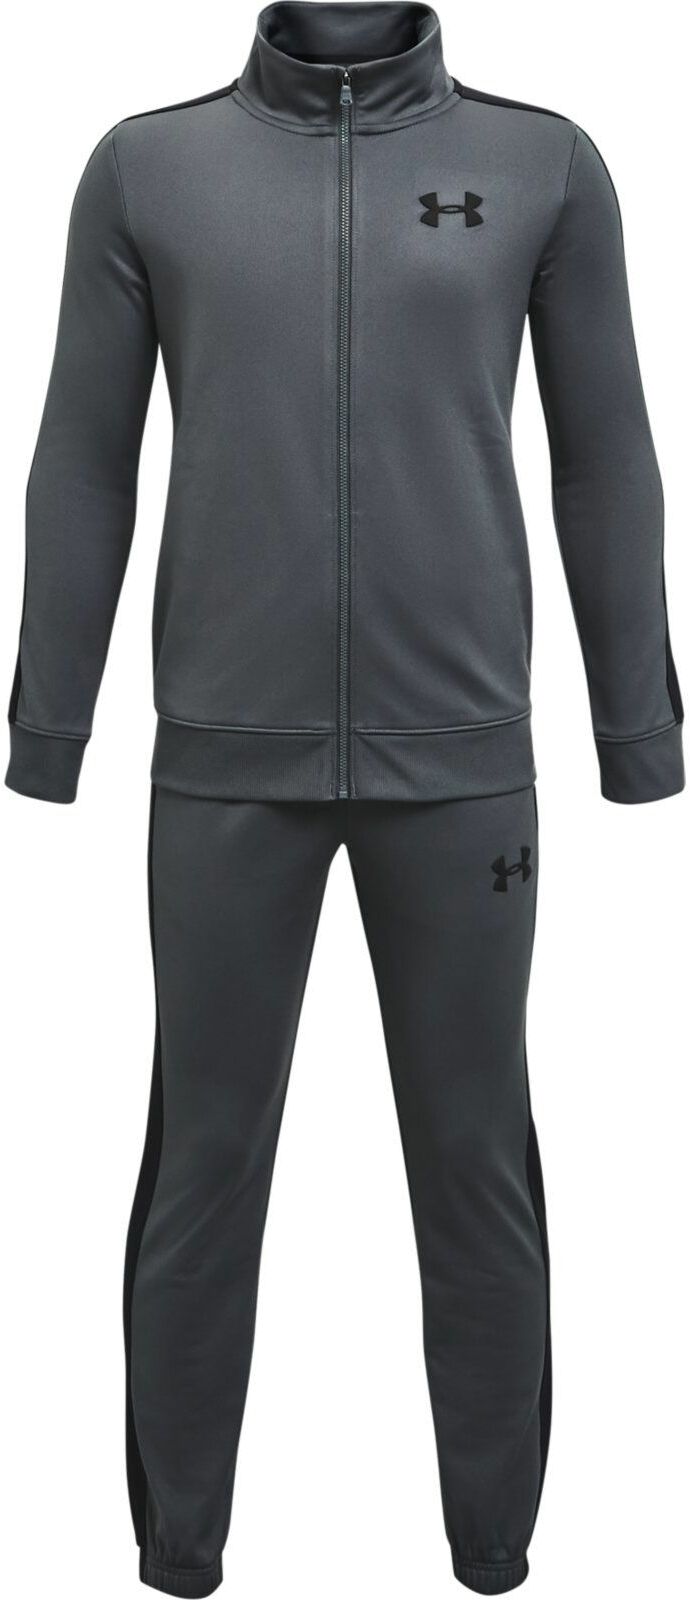 Костюм спортивный Under Armour Ua Knit Track Suit серый, 122